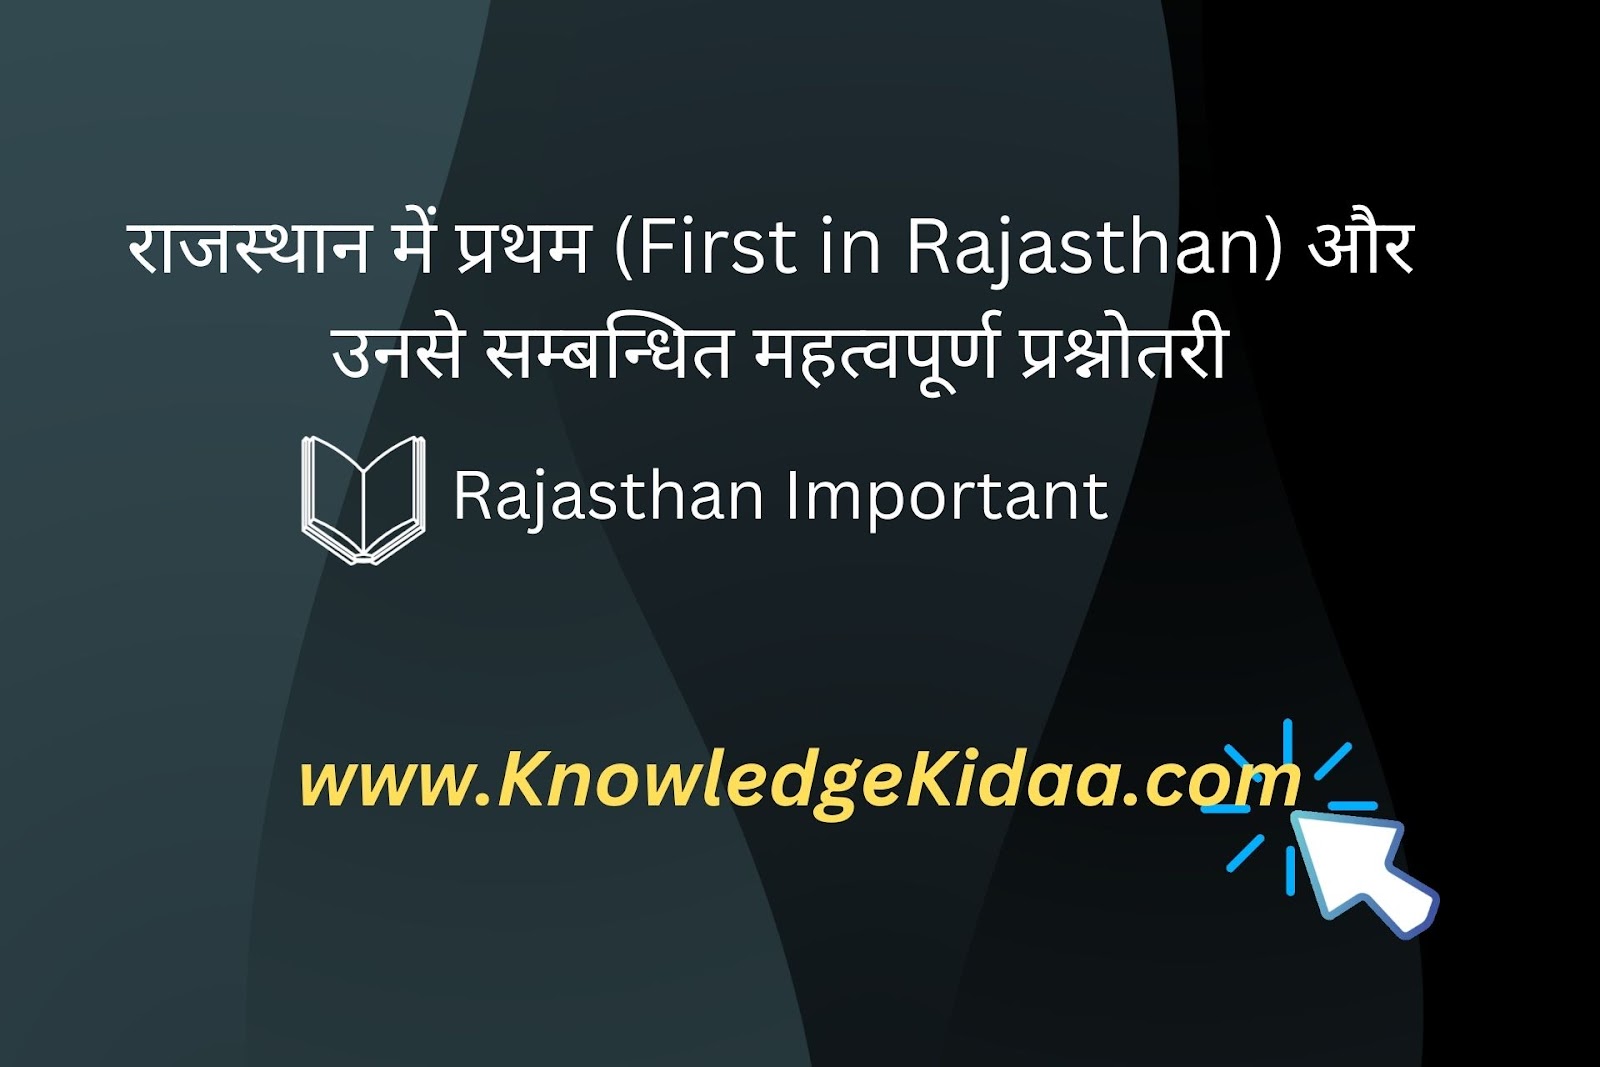 राजस्थान में प्रथम (First in Rajasthan) और उनसे सम्बन्धित महत्वपूर्ण प्रश्नोतरी